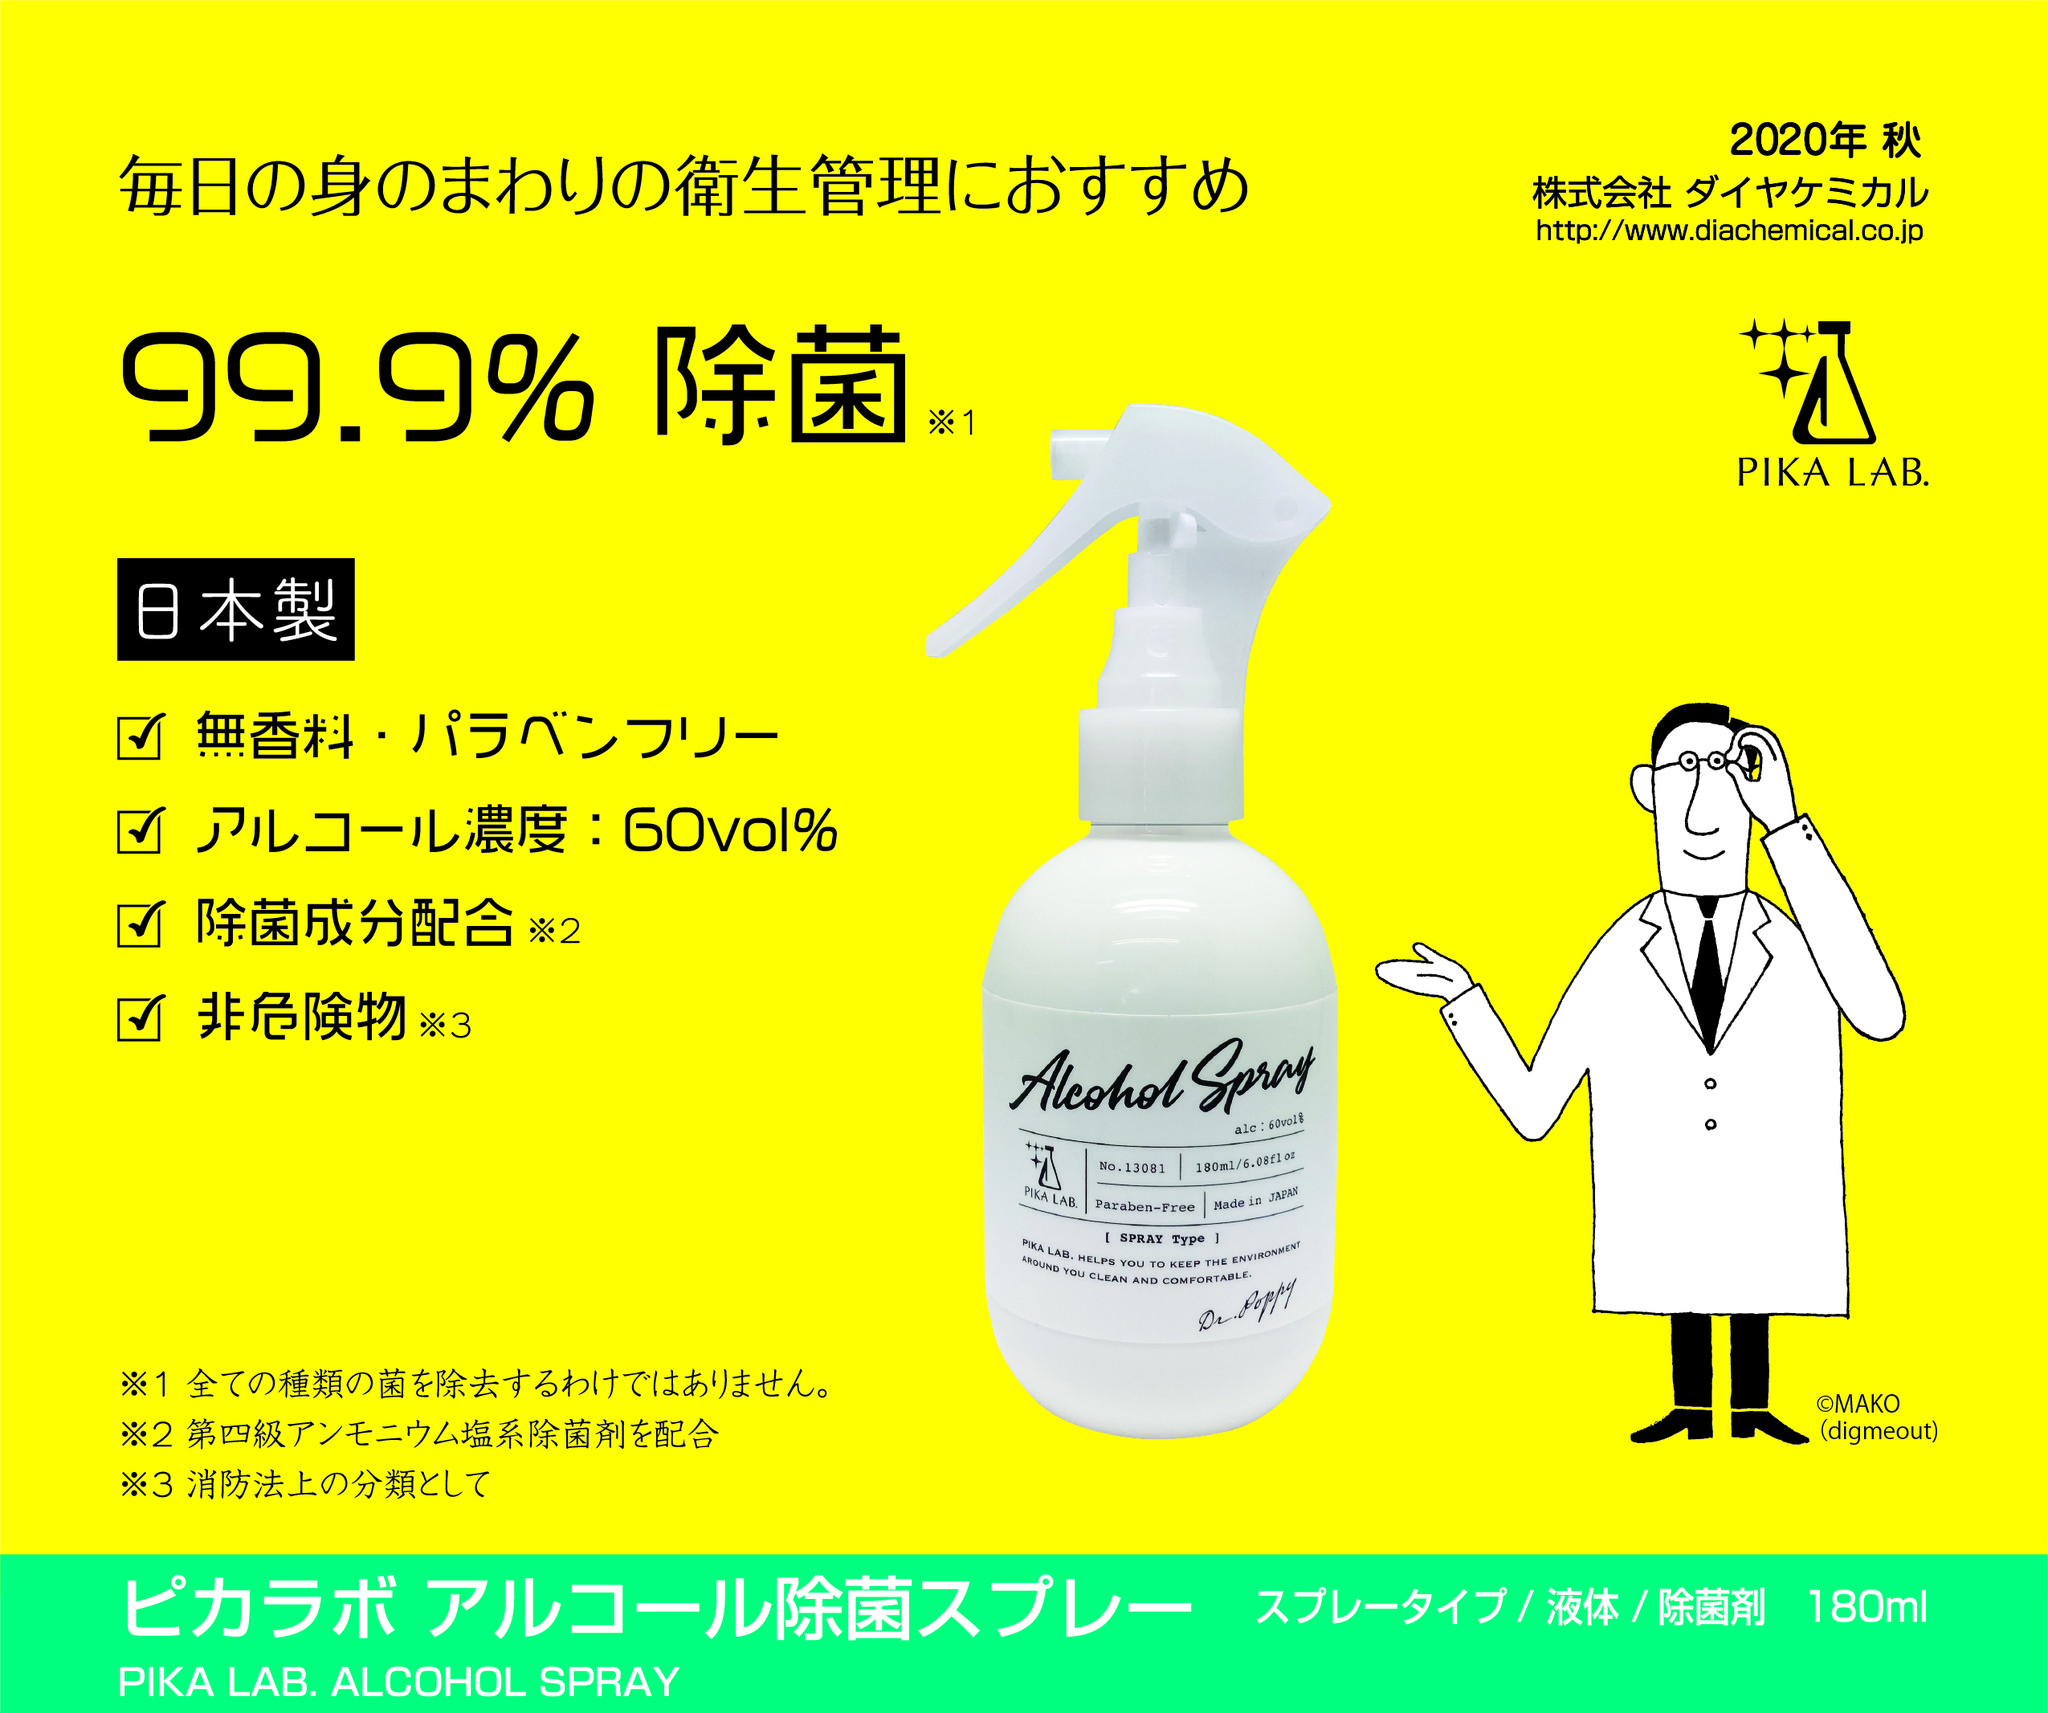 ダイヤケミカル 日本製アルコール除菌スプレーを発売 株式会社ダイヤケミカルのプレスリリース